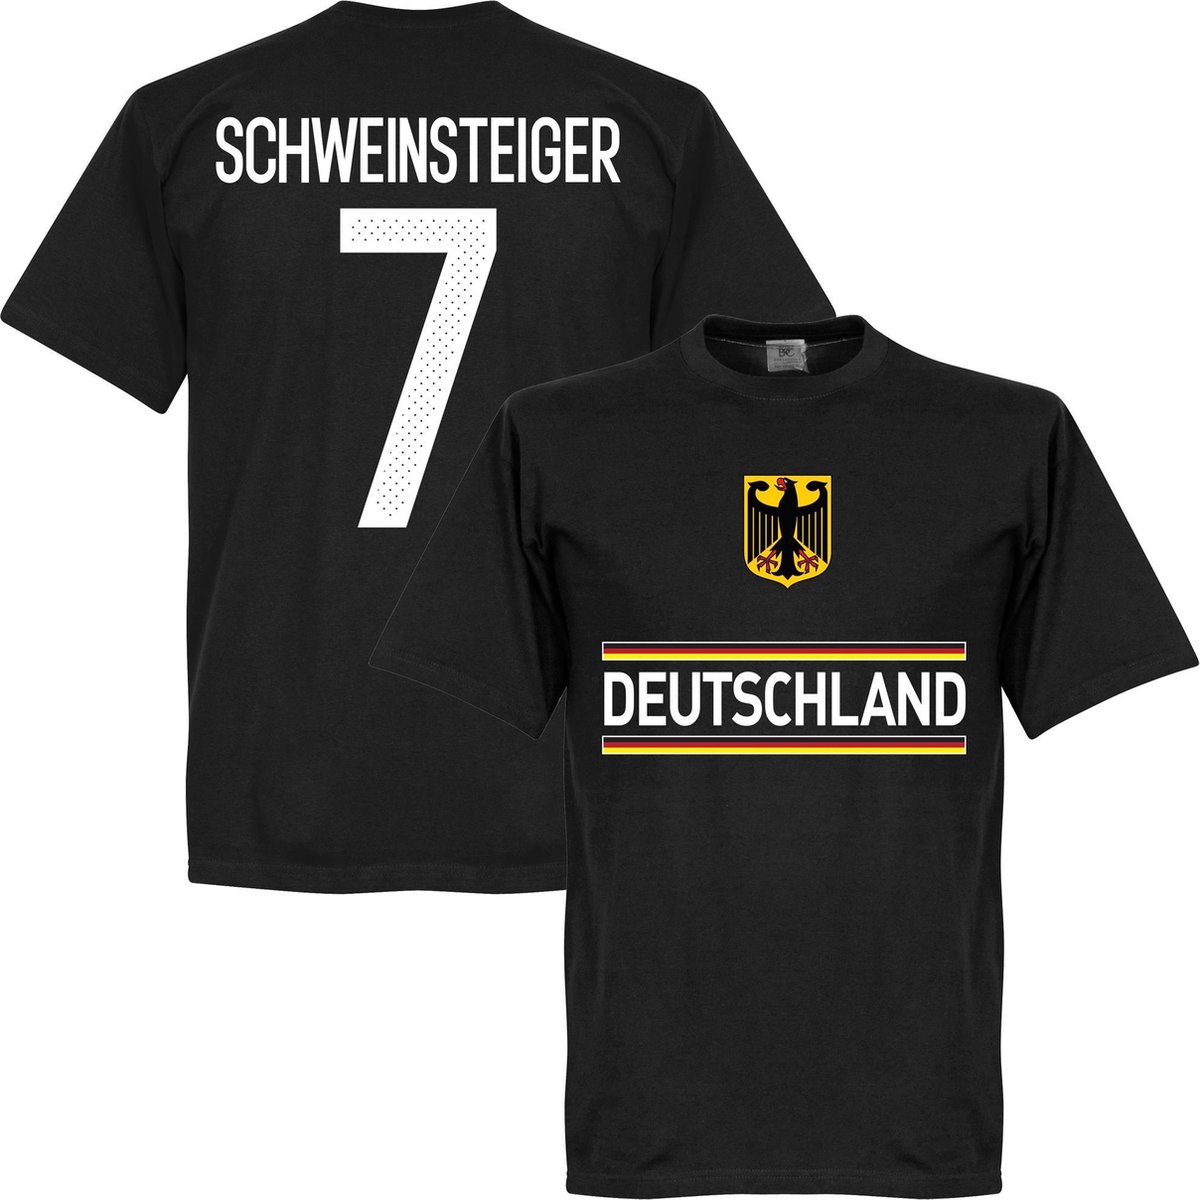 Duitsland Schweinsteiger Team T-Shirt - 3XL